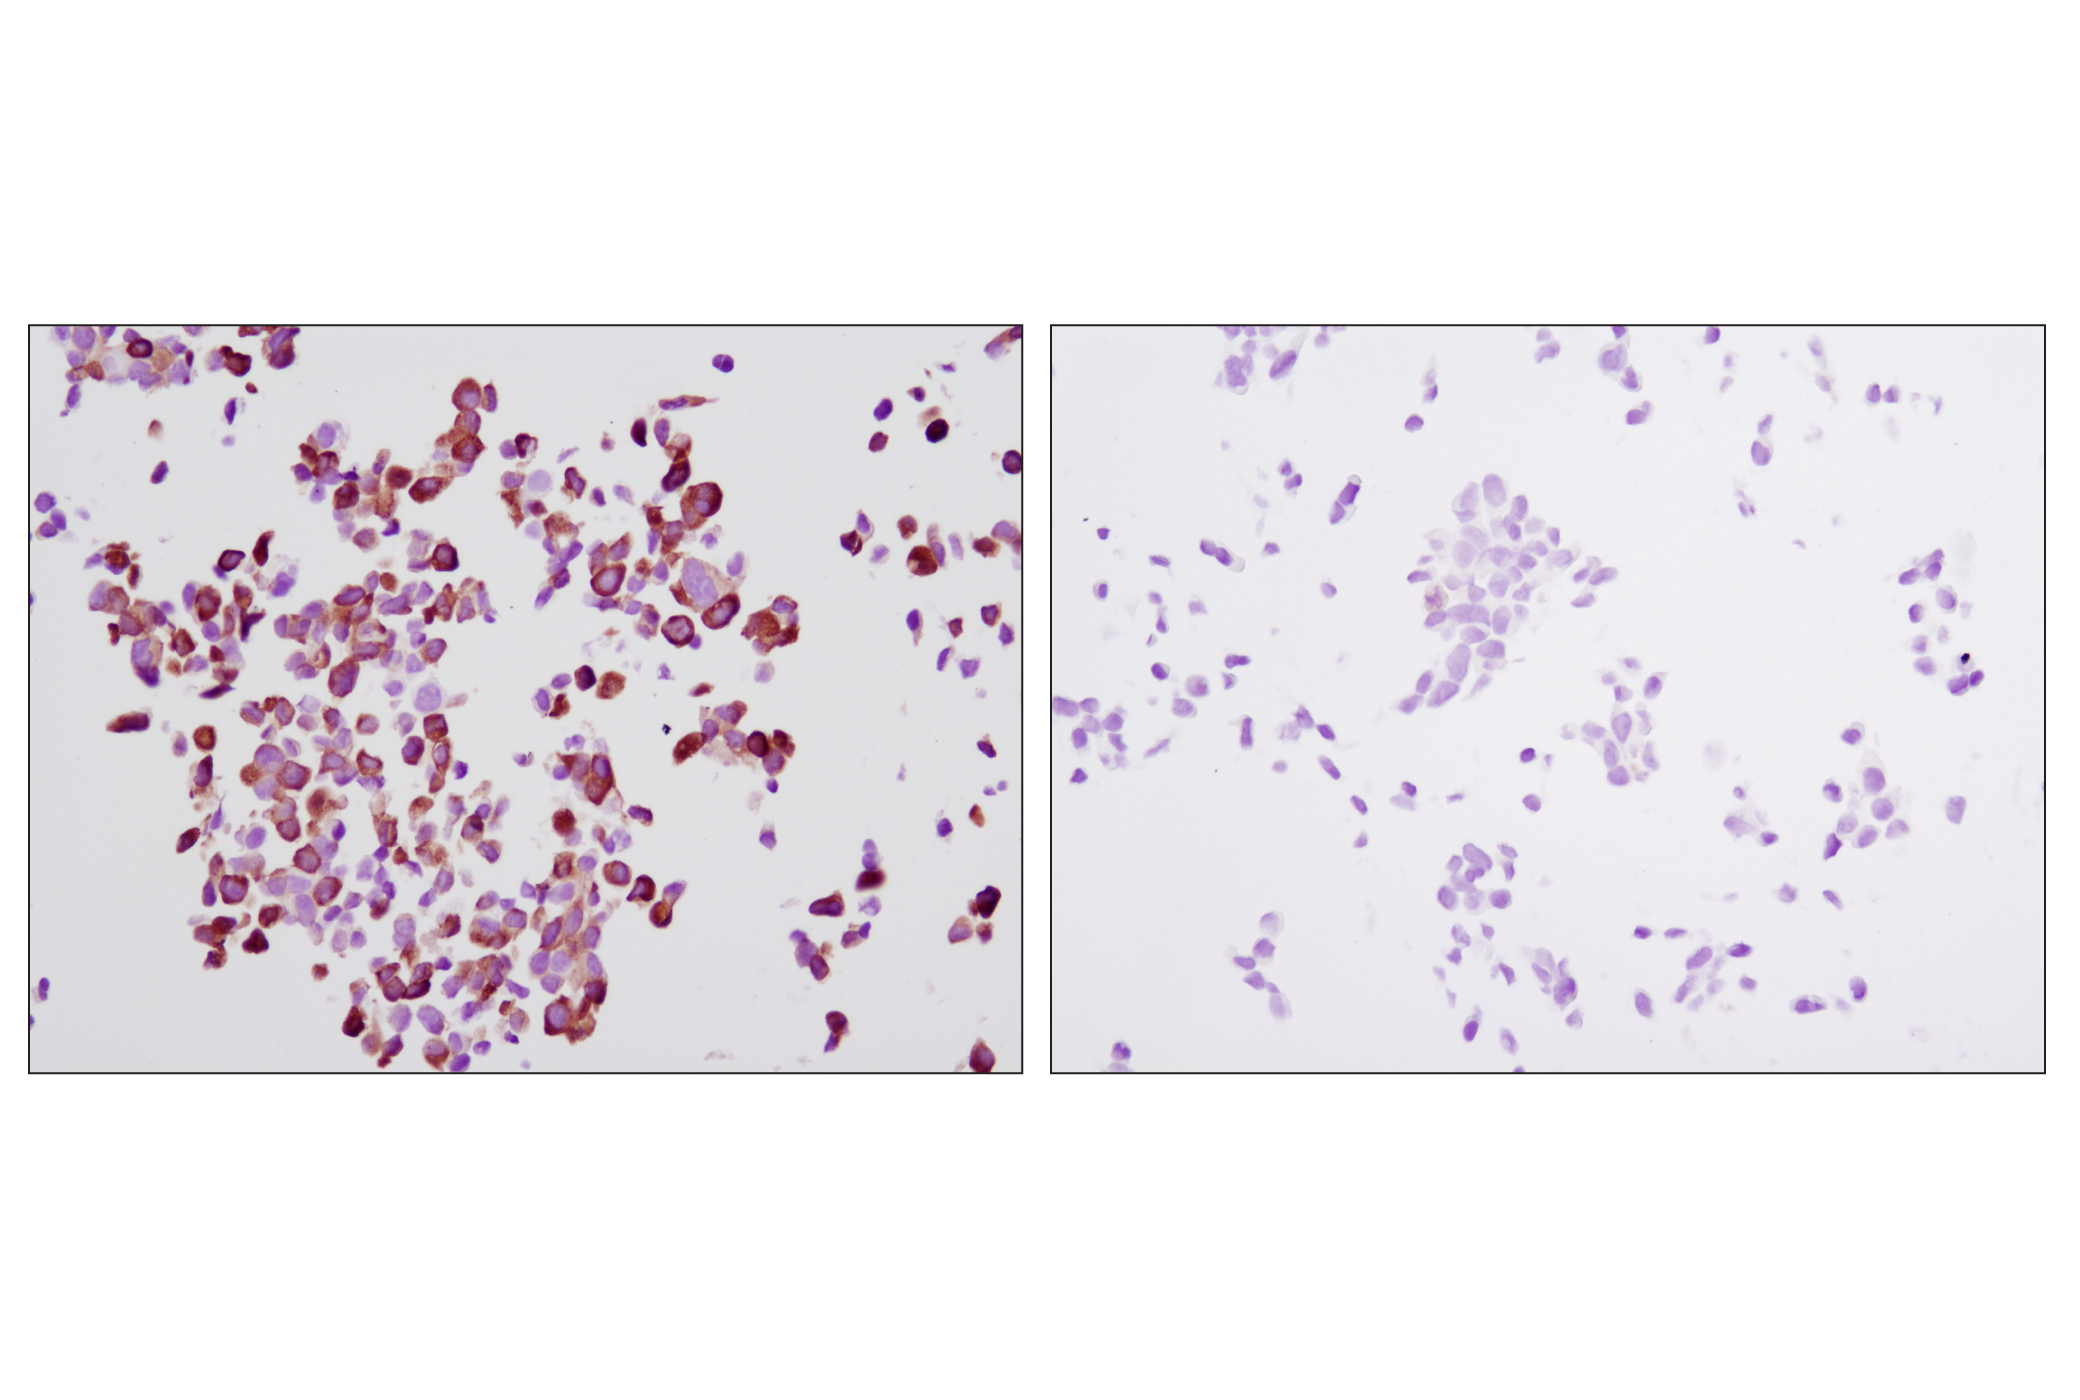  Image 15: p70 S6 Kinase Substrates Antibody Sampler Kit